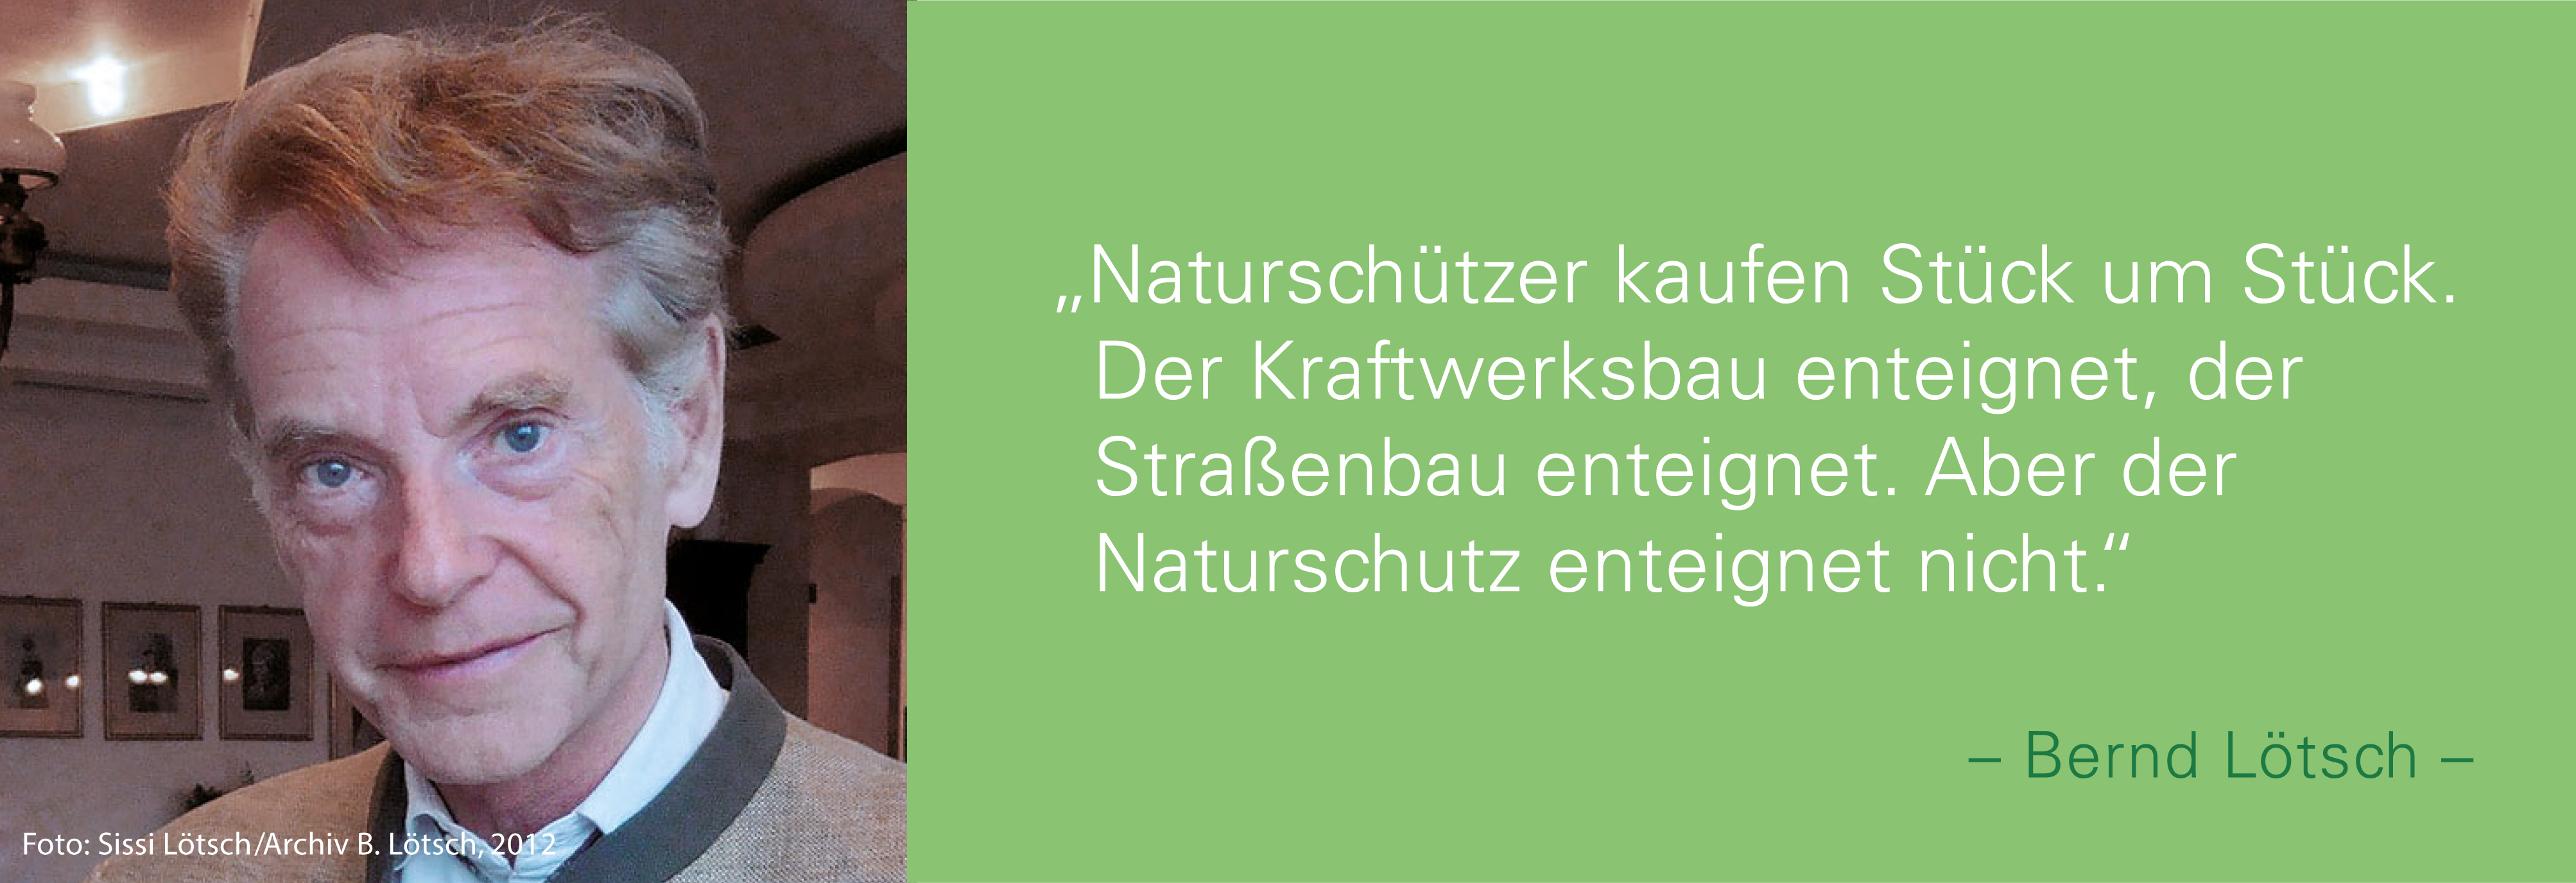 Portraitfoto von Bernd Lötsch mit seinem Zitat: Naturschützer kaufen Stück um Stück. Der Kraftwerksbau enteignet, der Straßenbau enteignet.